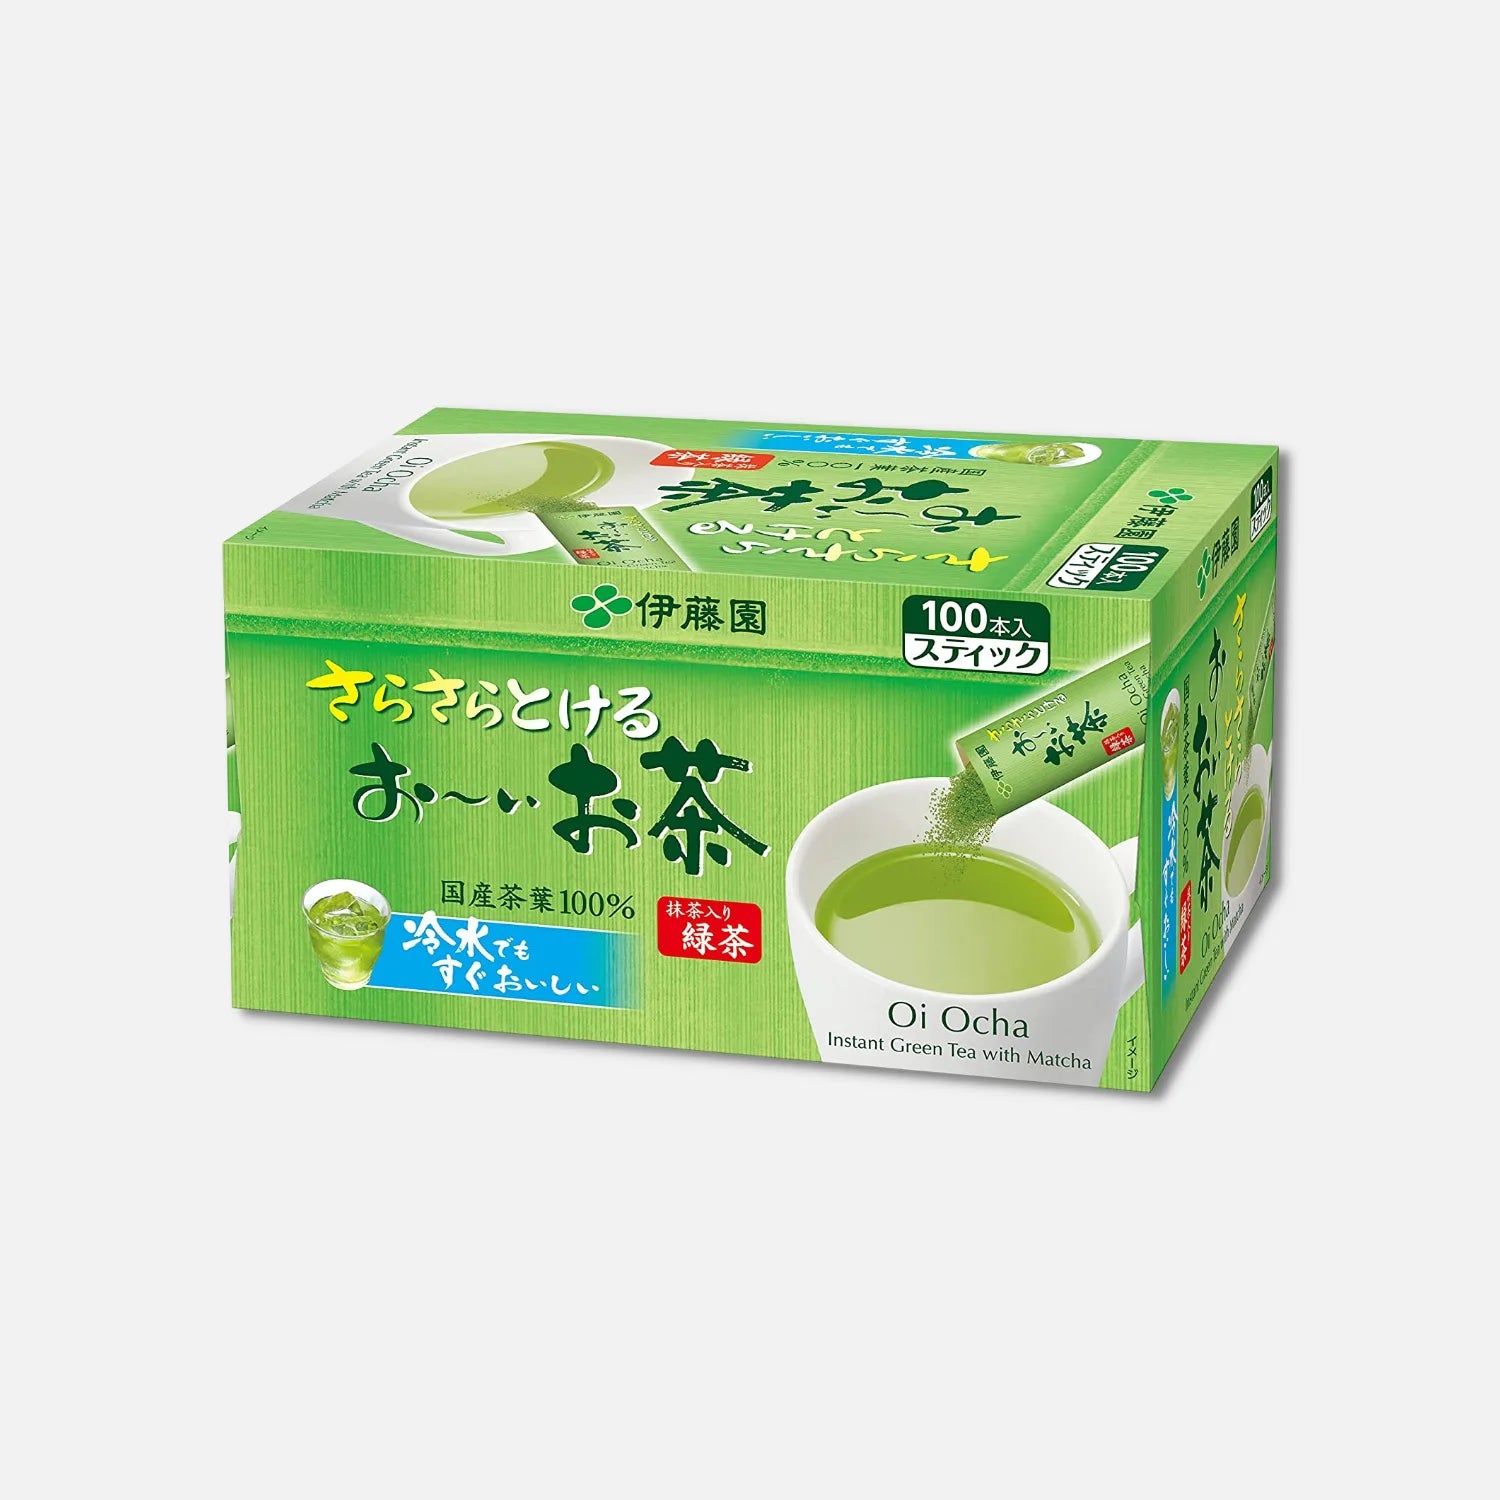 Itoen Oi Ocha Green Tea Sticks 0.8g (Pack of 100) - Buy Me Japan